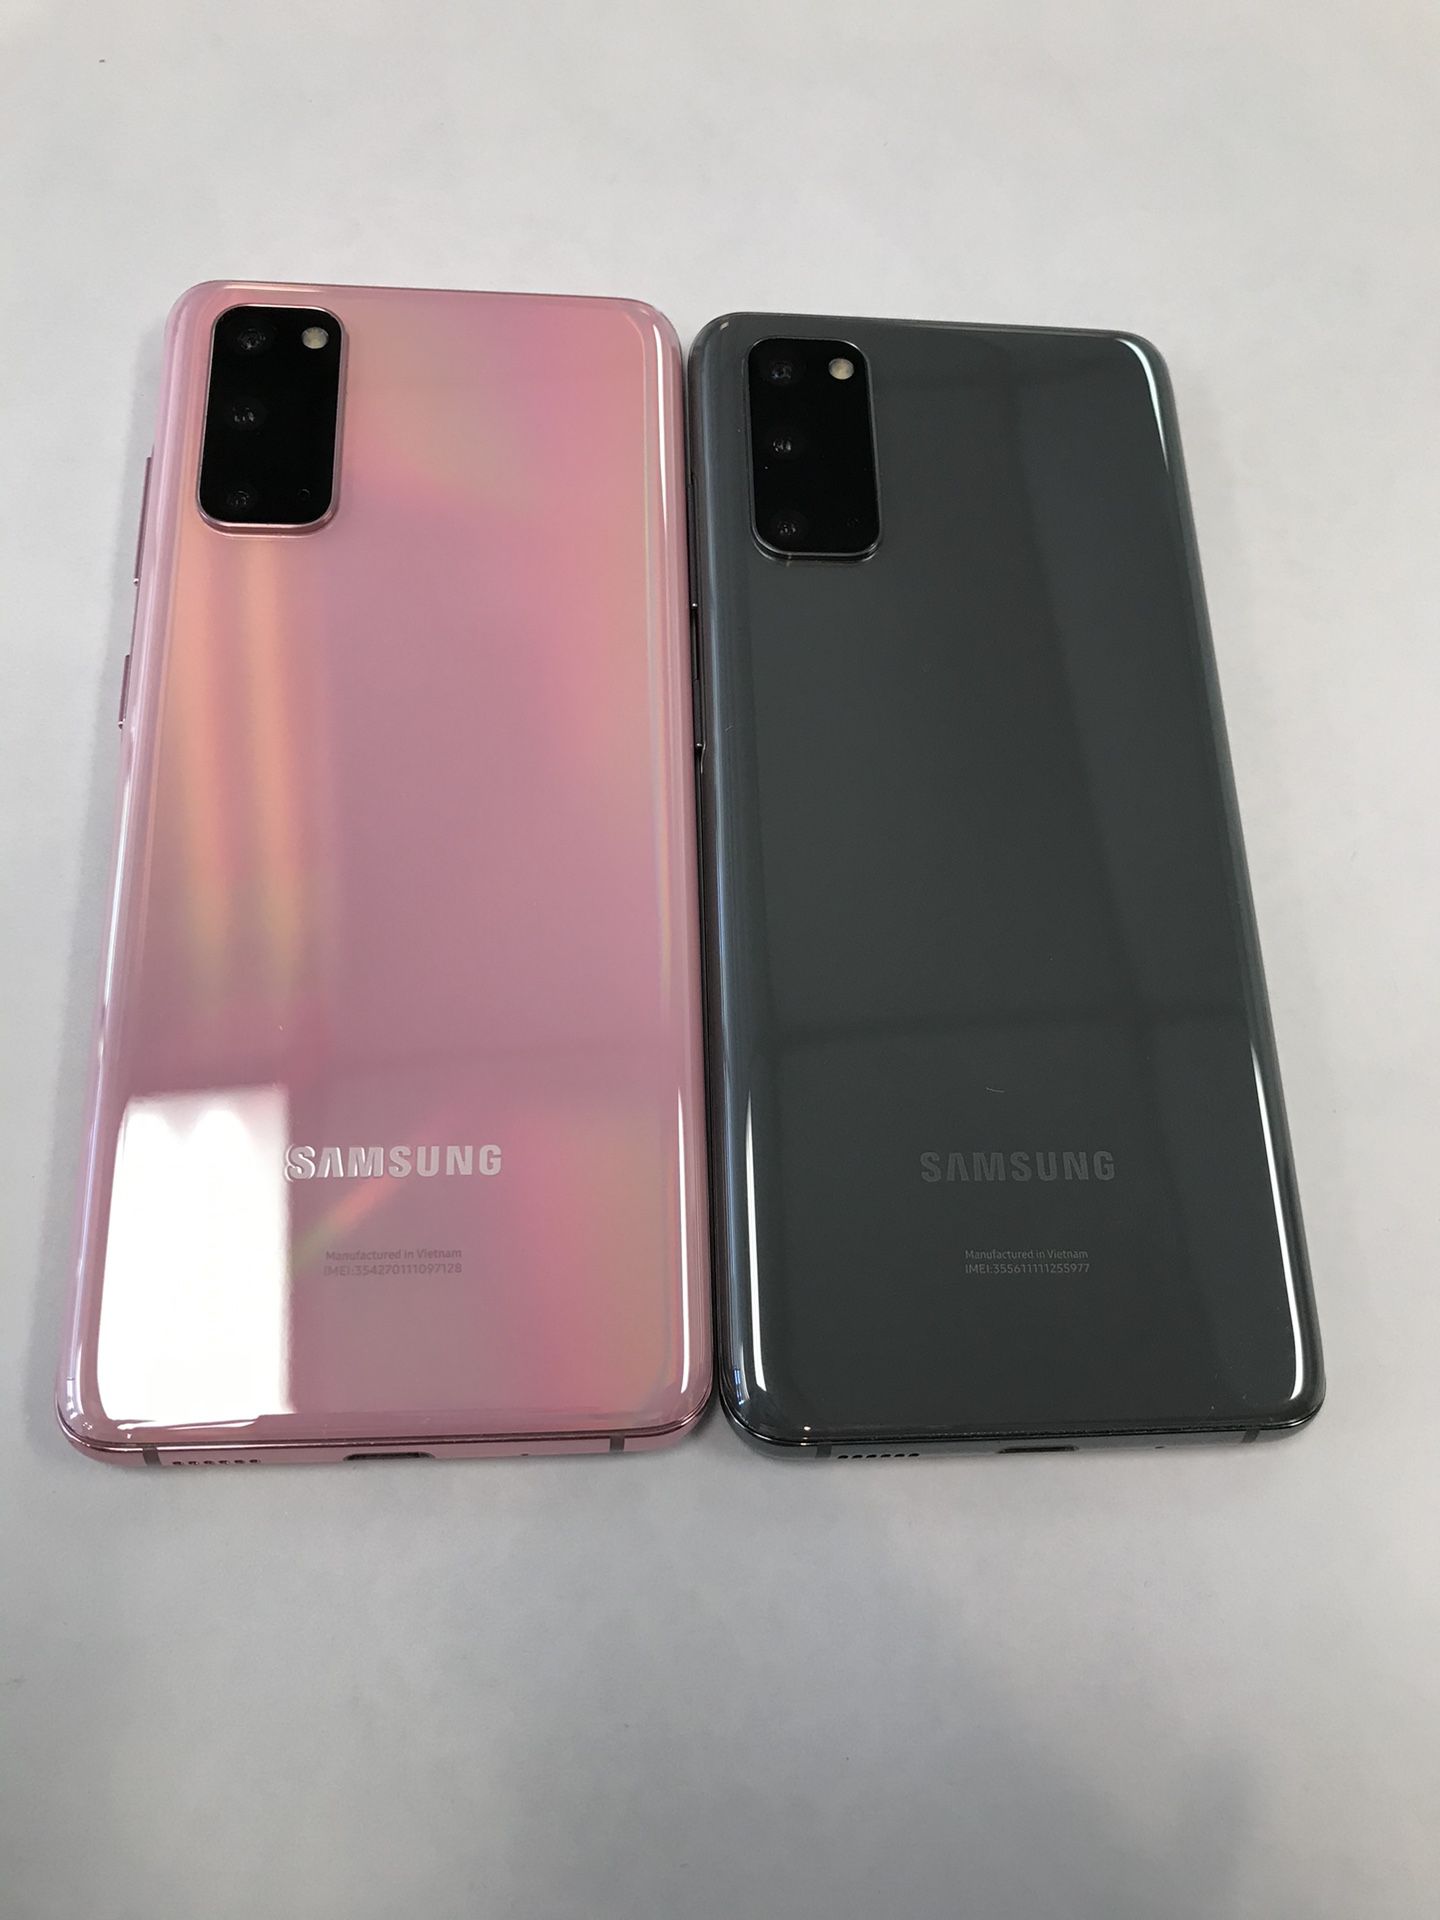 Samsung Galaxy S20 5G 128gb Unlocked $199 Each 